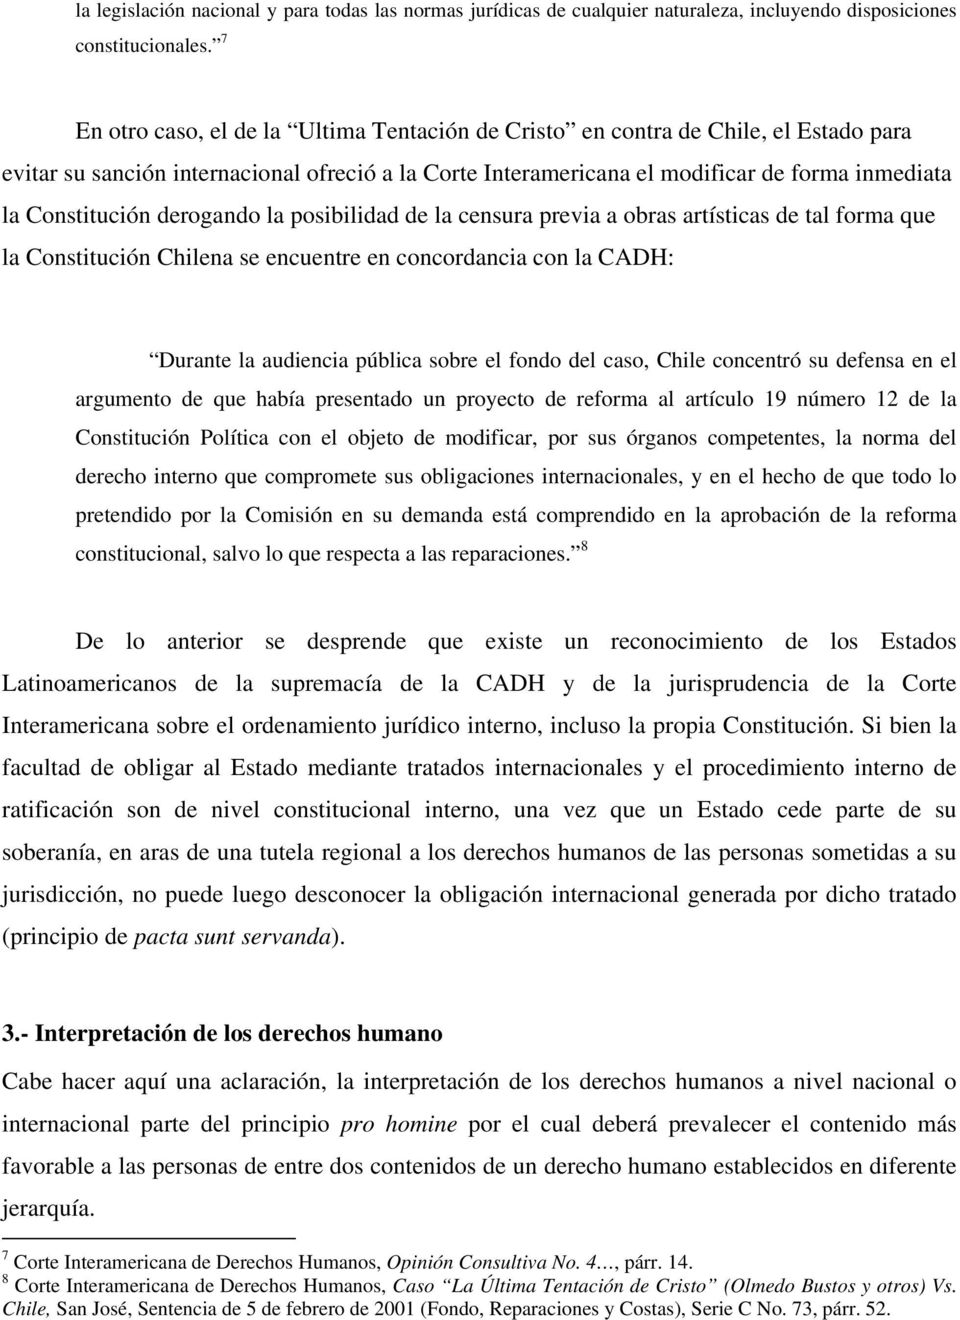 Constitución derogando la posibilidad de la censura previa a obras artísticas de tal forma que la Constitución Chilena se encuentre en concordancia con la CADH: Durante la audiencia pública sobre el